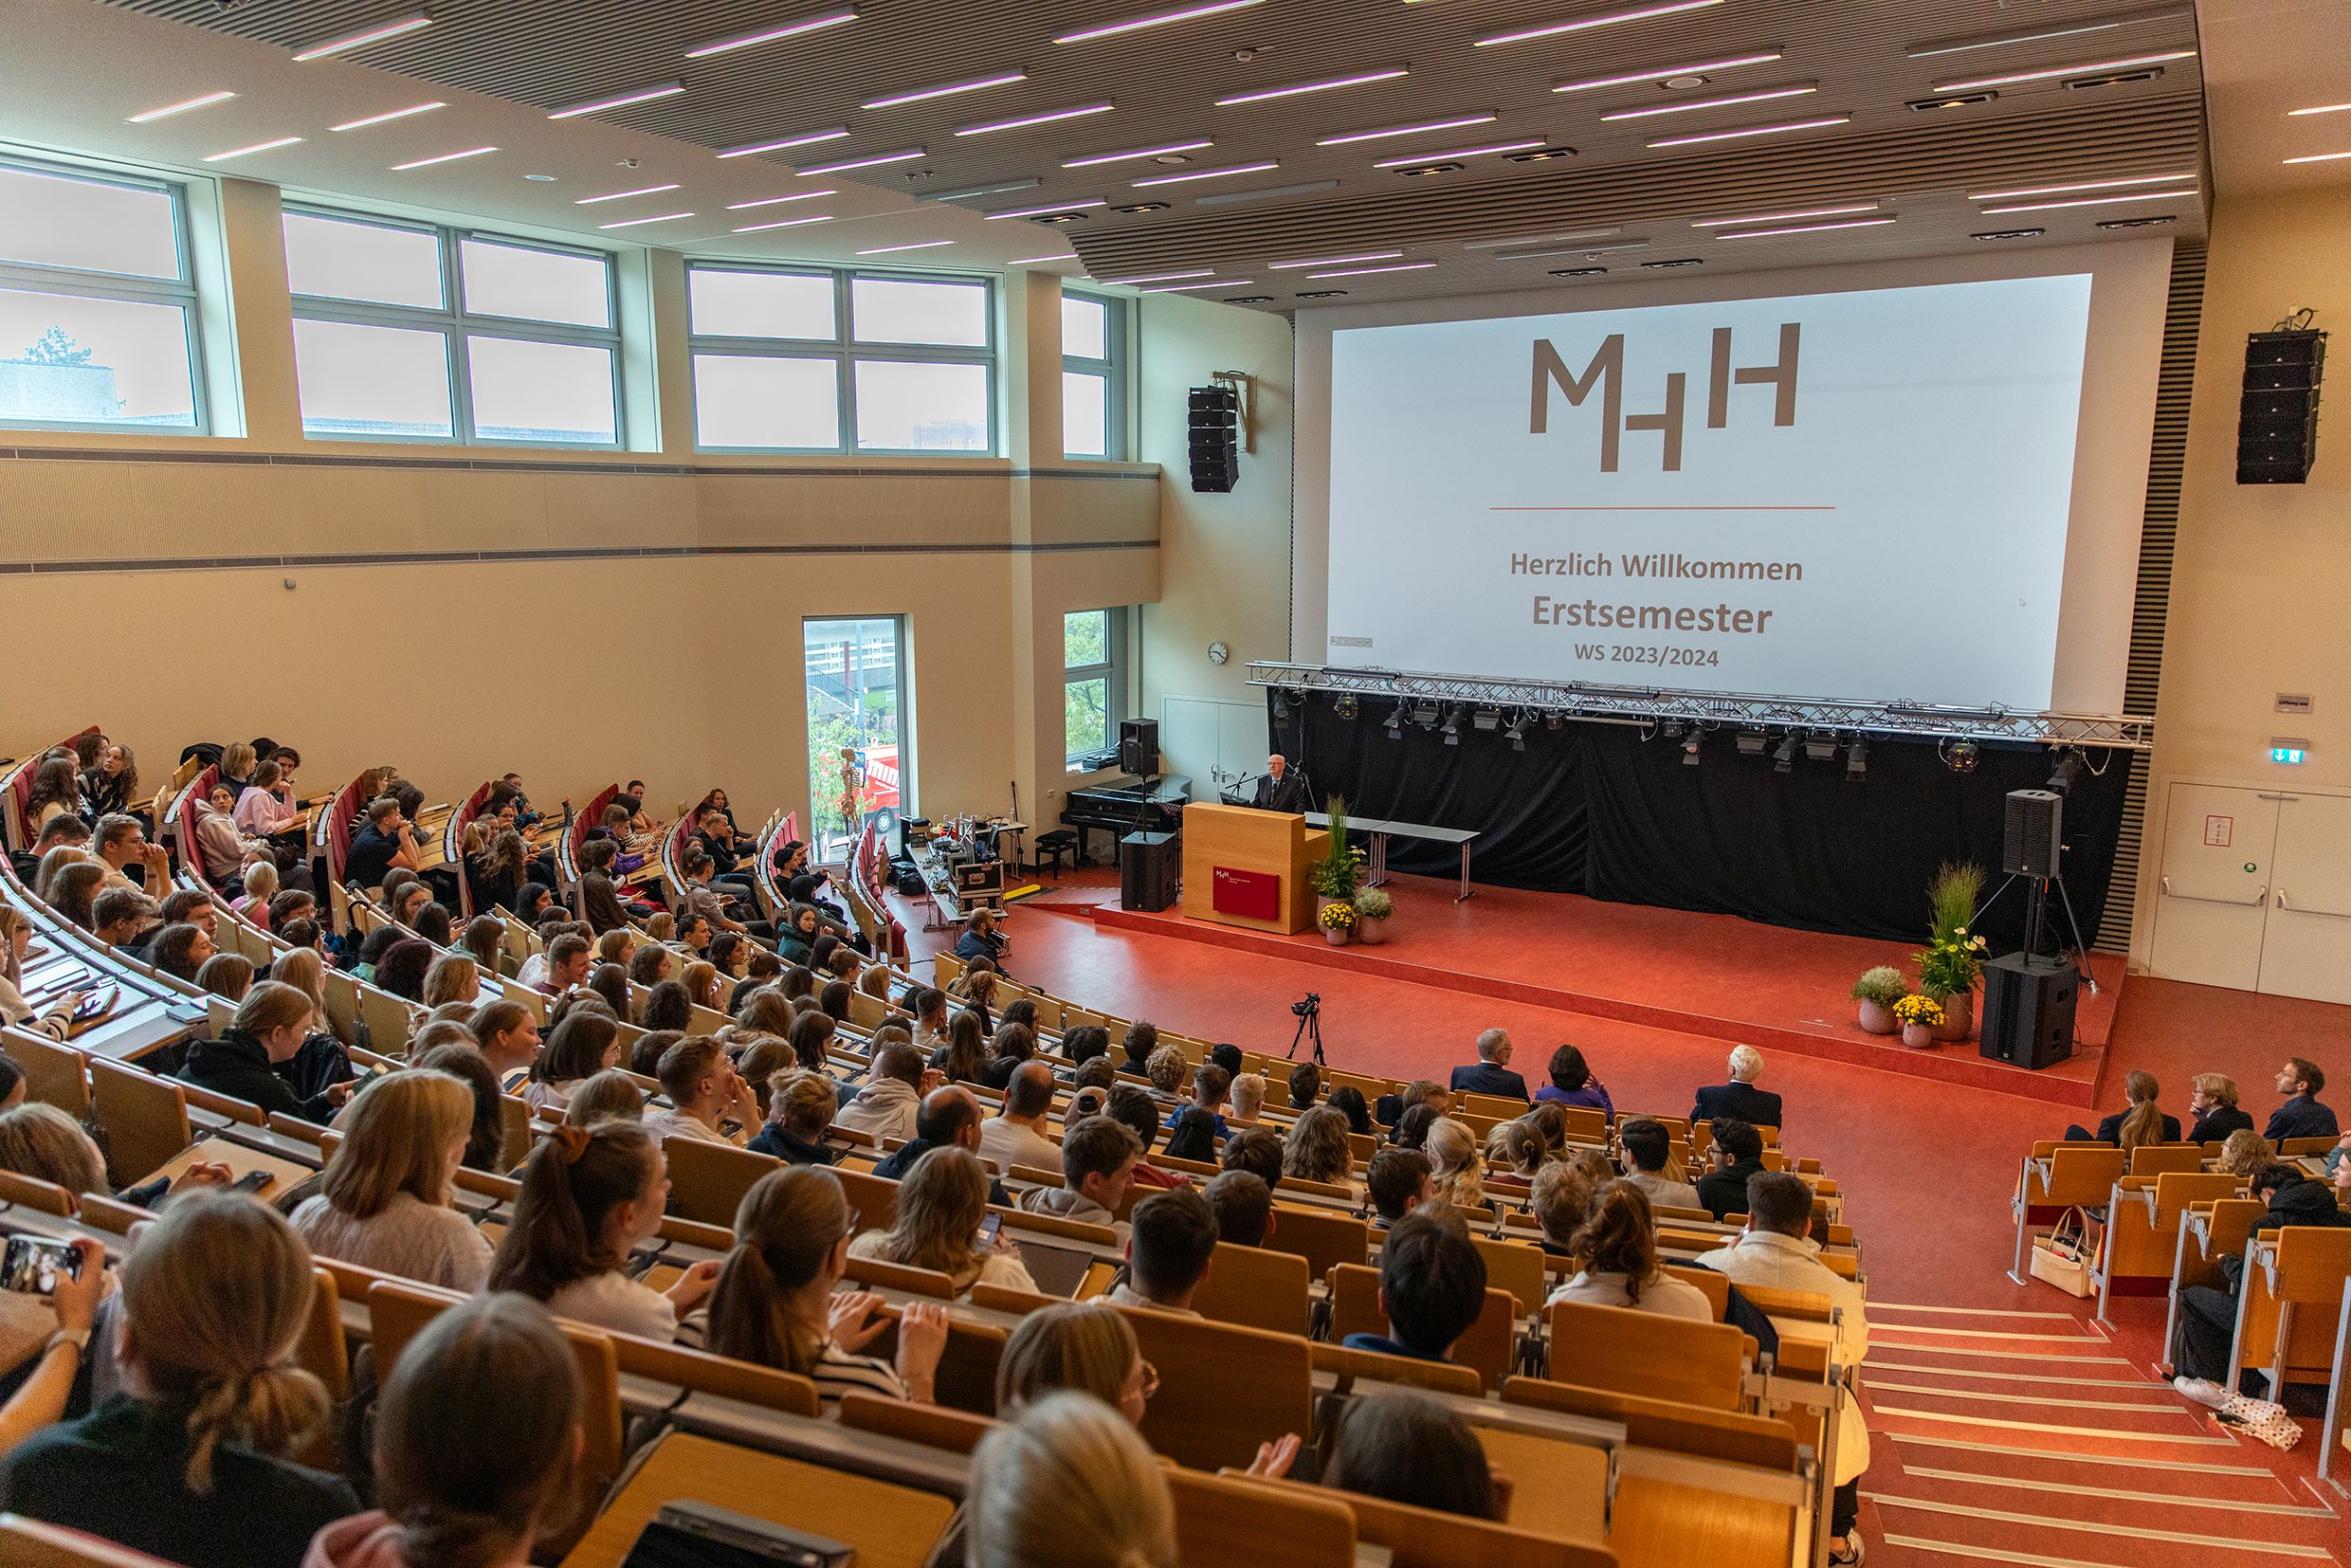 Das Foto zeigt die Erstsemesterbegrüßung der Medizinischen Hochschule Hannover. Es ist ein größer Hörsaal zu sehen, in dem die neuen Studierenden sitzen. Vorne an der Leinwand wird die Begrüßungspräsentation angezeigt. 